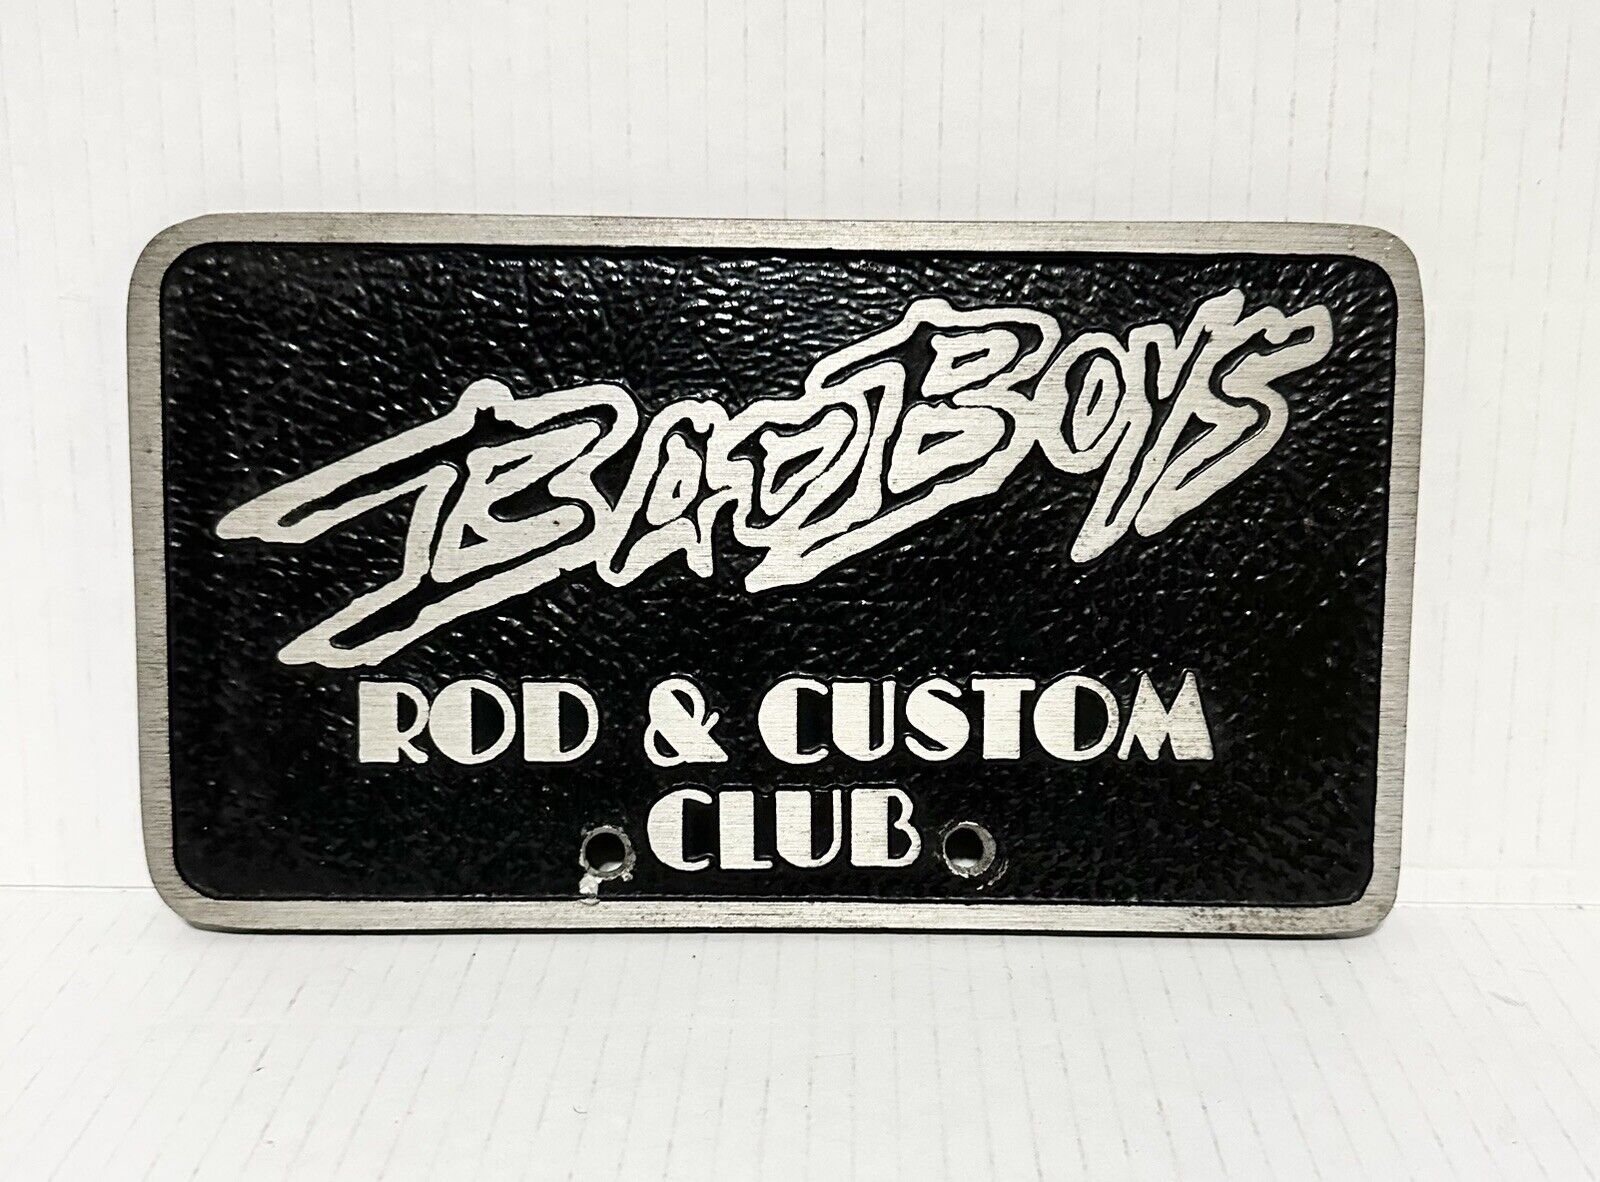 Bad Boys Rod & Custom Club Car Plaque Vintage